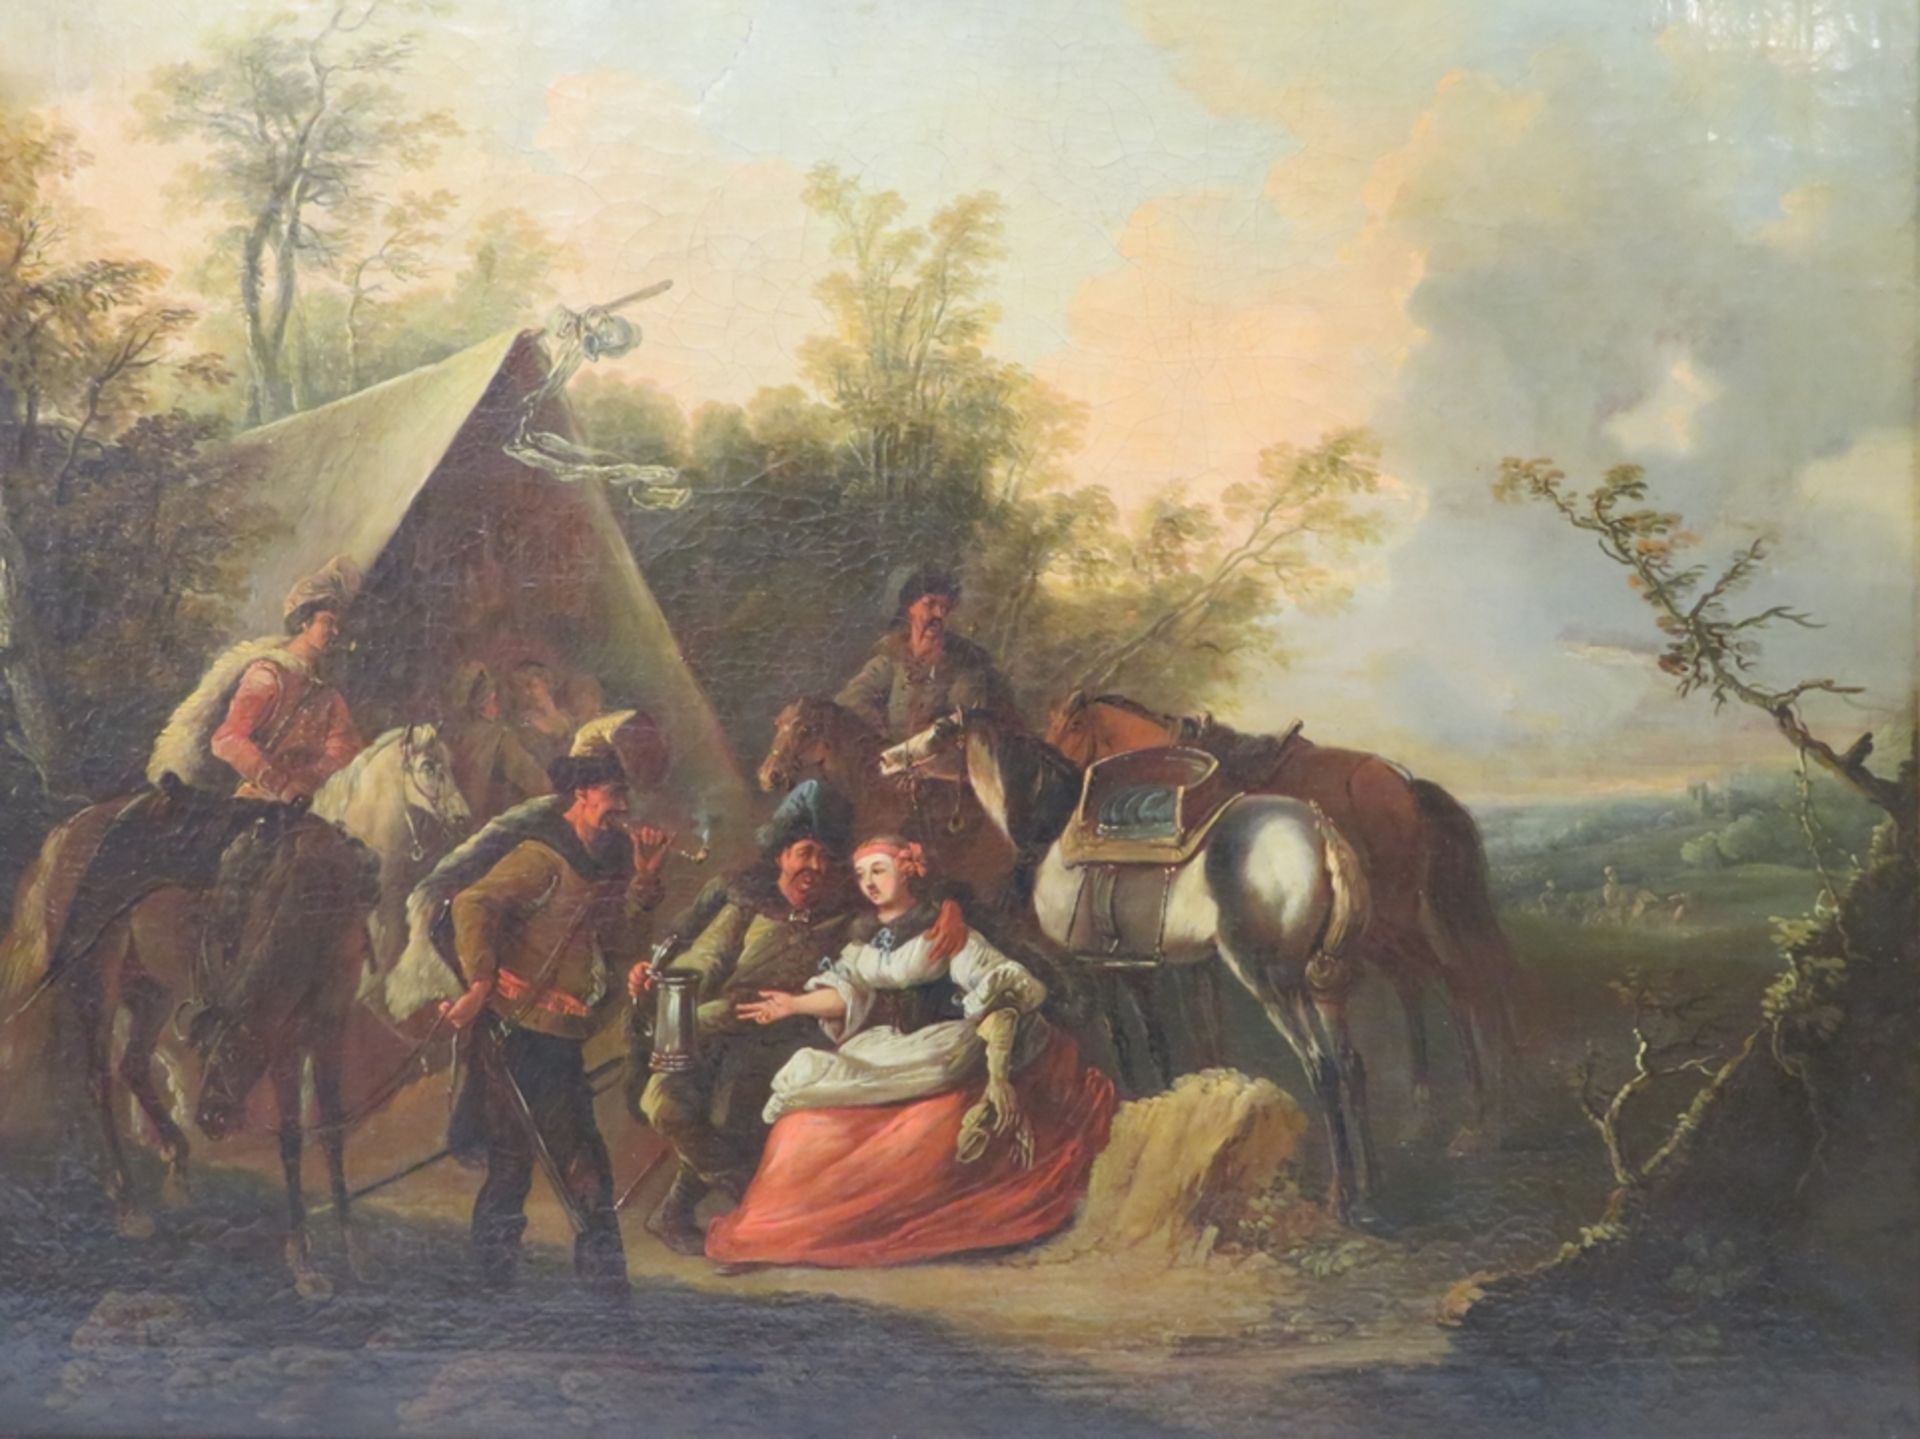 Niederlande, 18. Jahrhundert, "Soldaten im Lager mit Pferden und Marketenderin", Öl/Leinwand, 52 x